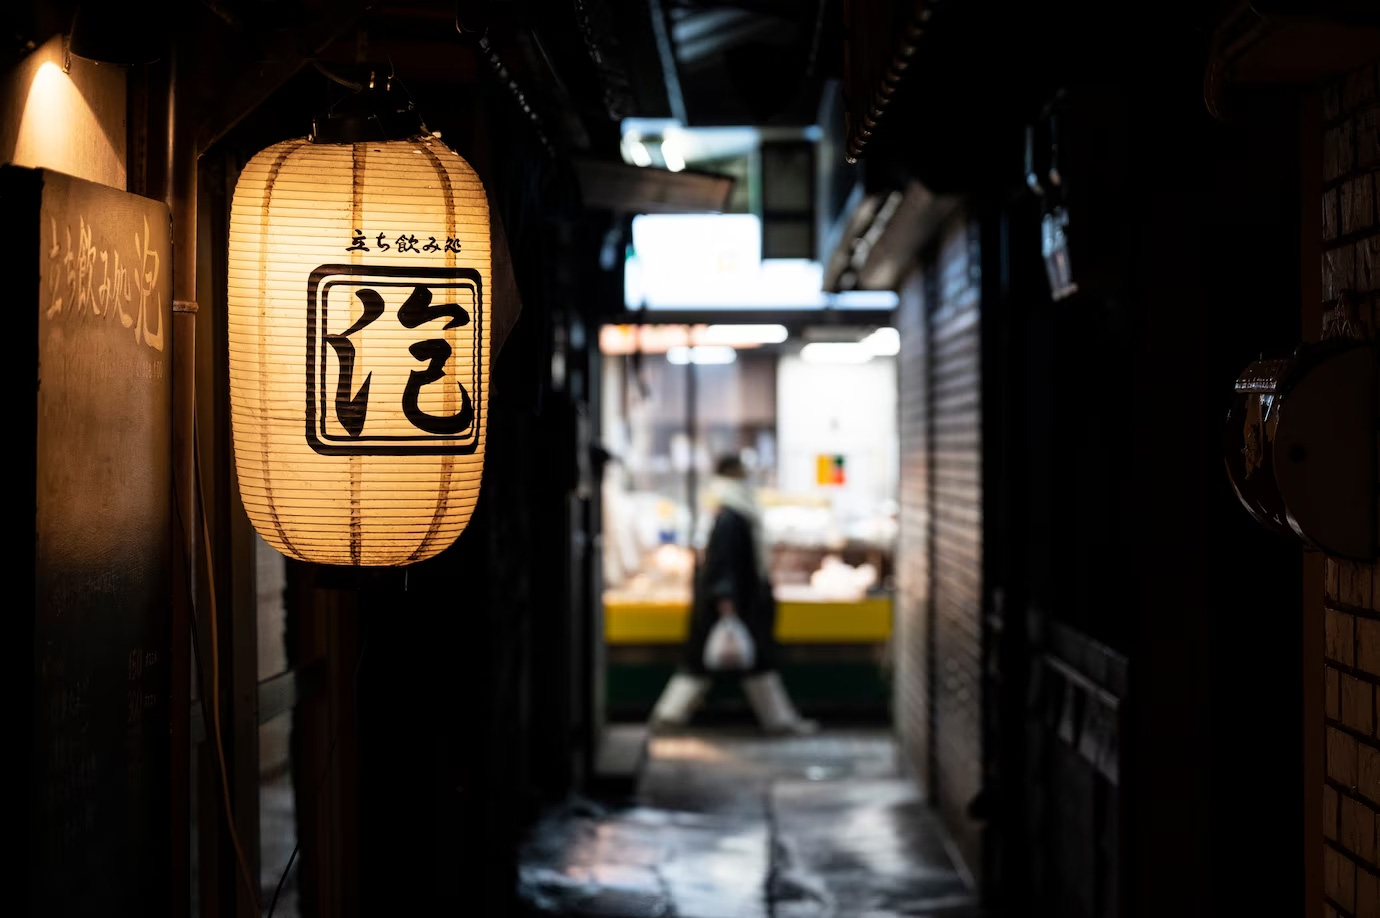 ánh sáng trong nhà hàng Nhật